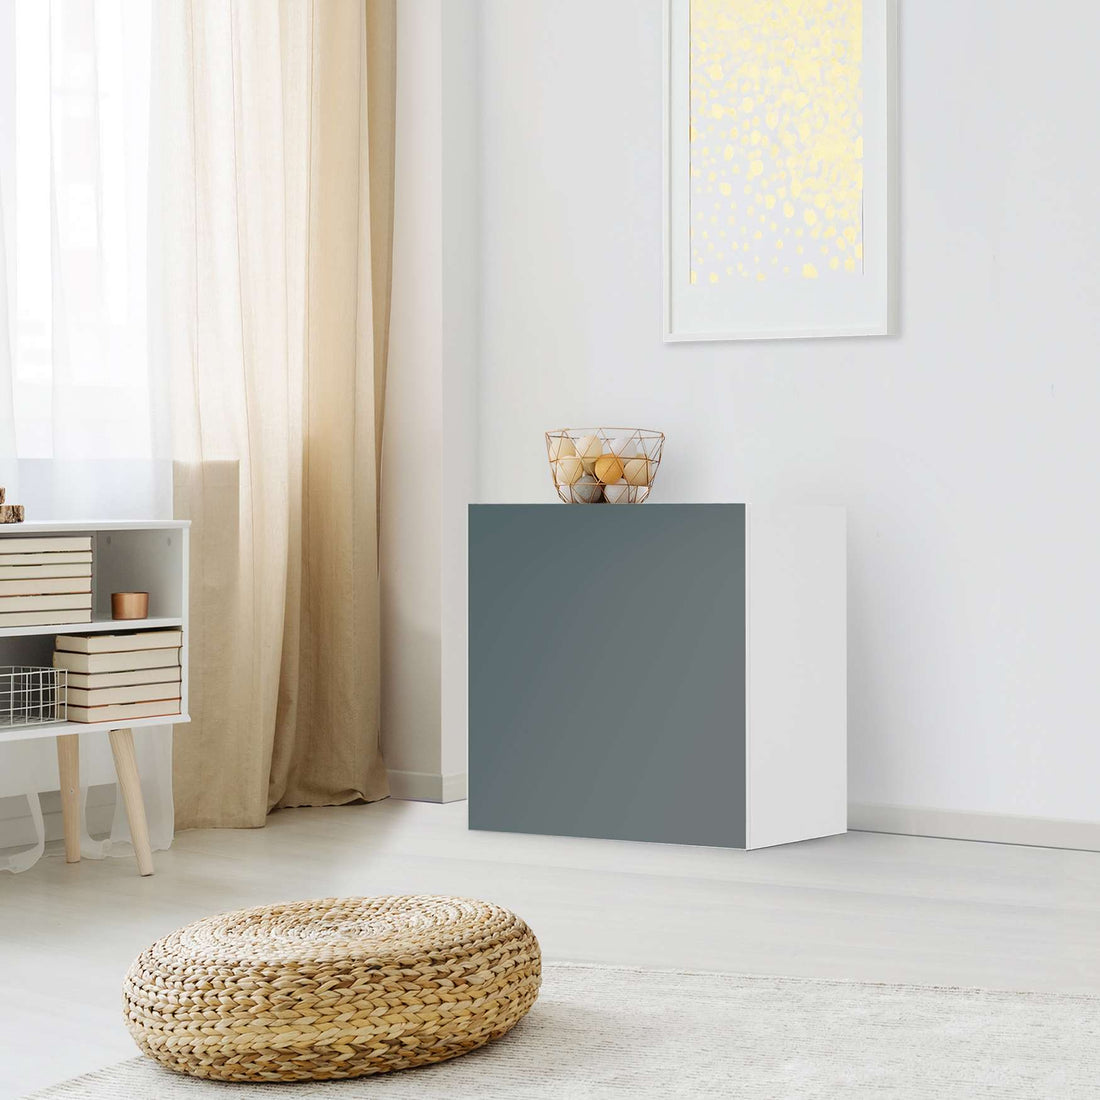 Klebefolie für Möbel Blaugrau Light - IKEA Besta Regal 1 Türe - Wohnzimmer